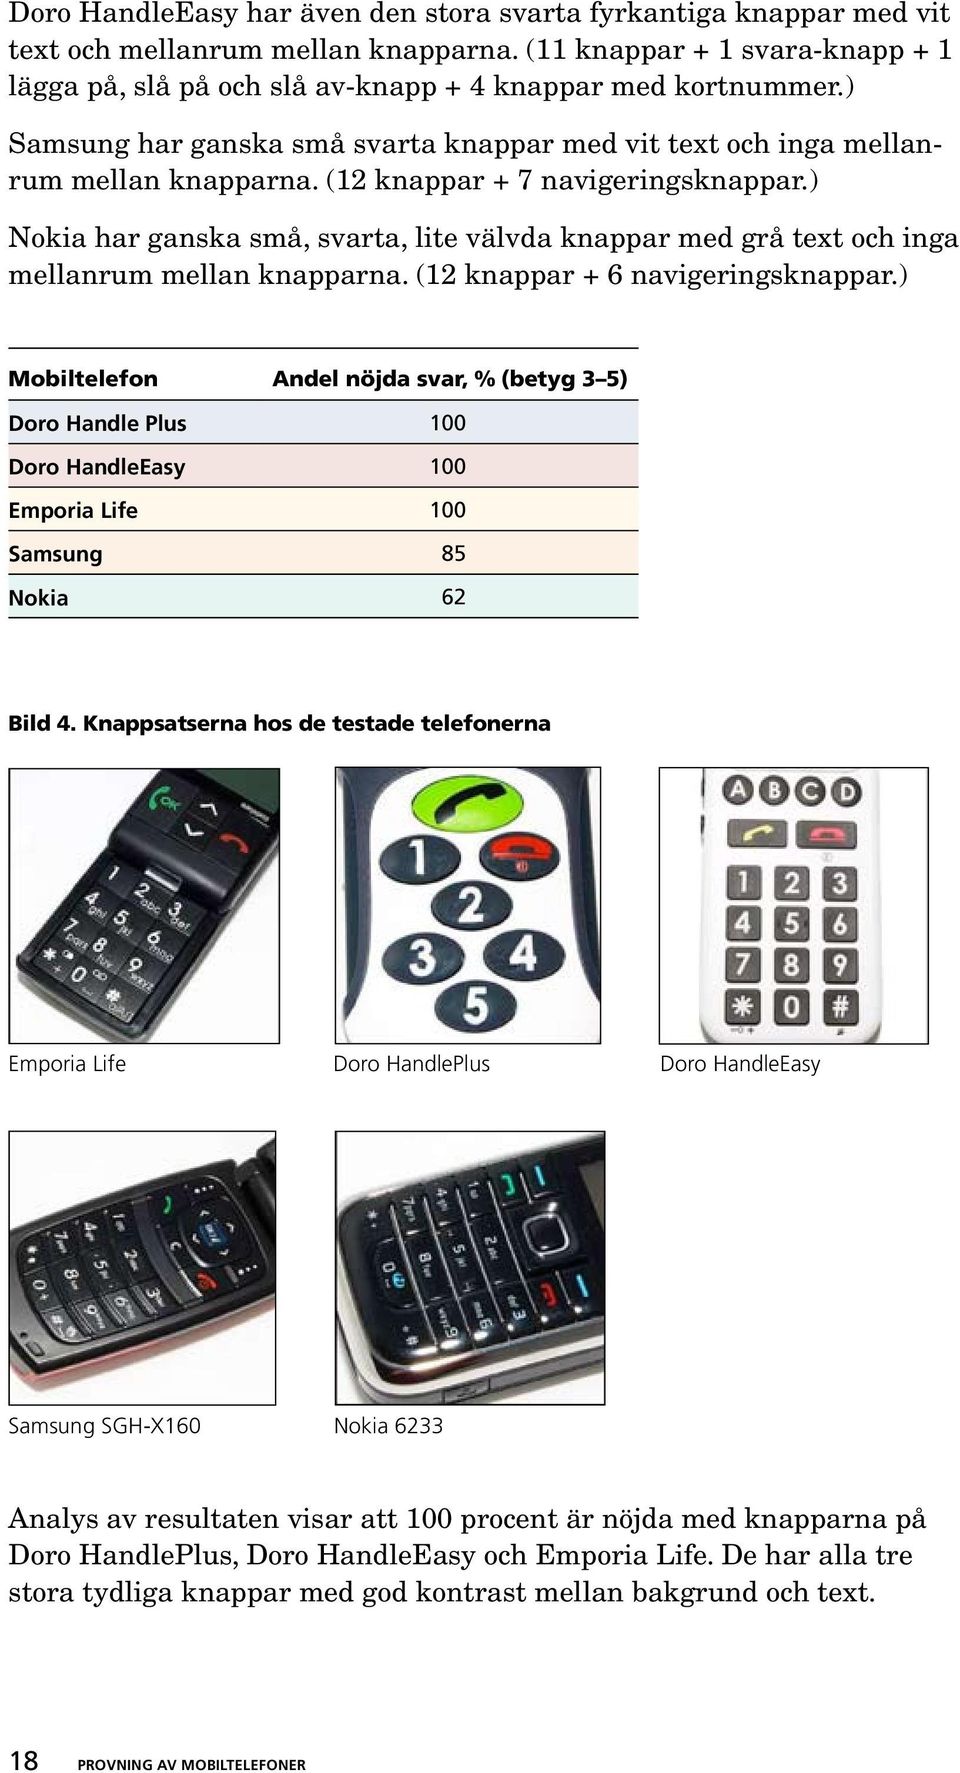 ) Nokia har ganska små, svarta, lite välvda knappar med grå text och inga mellanrum mellan knapparna. (12 knappar + 6 navigeringsknappar.